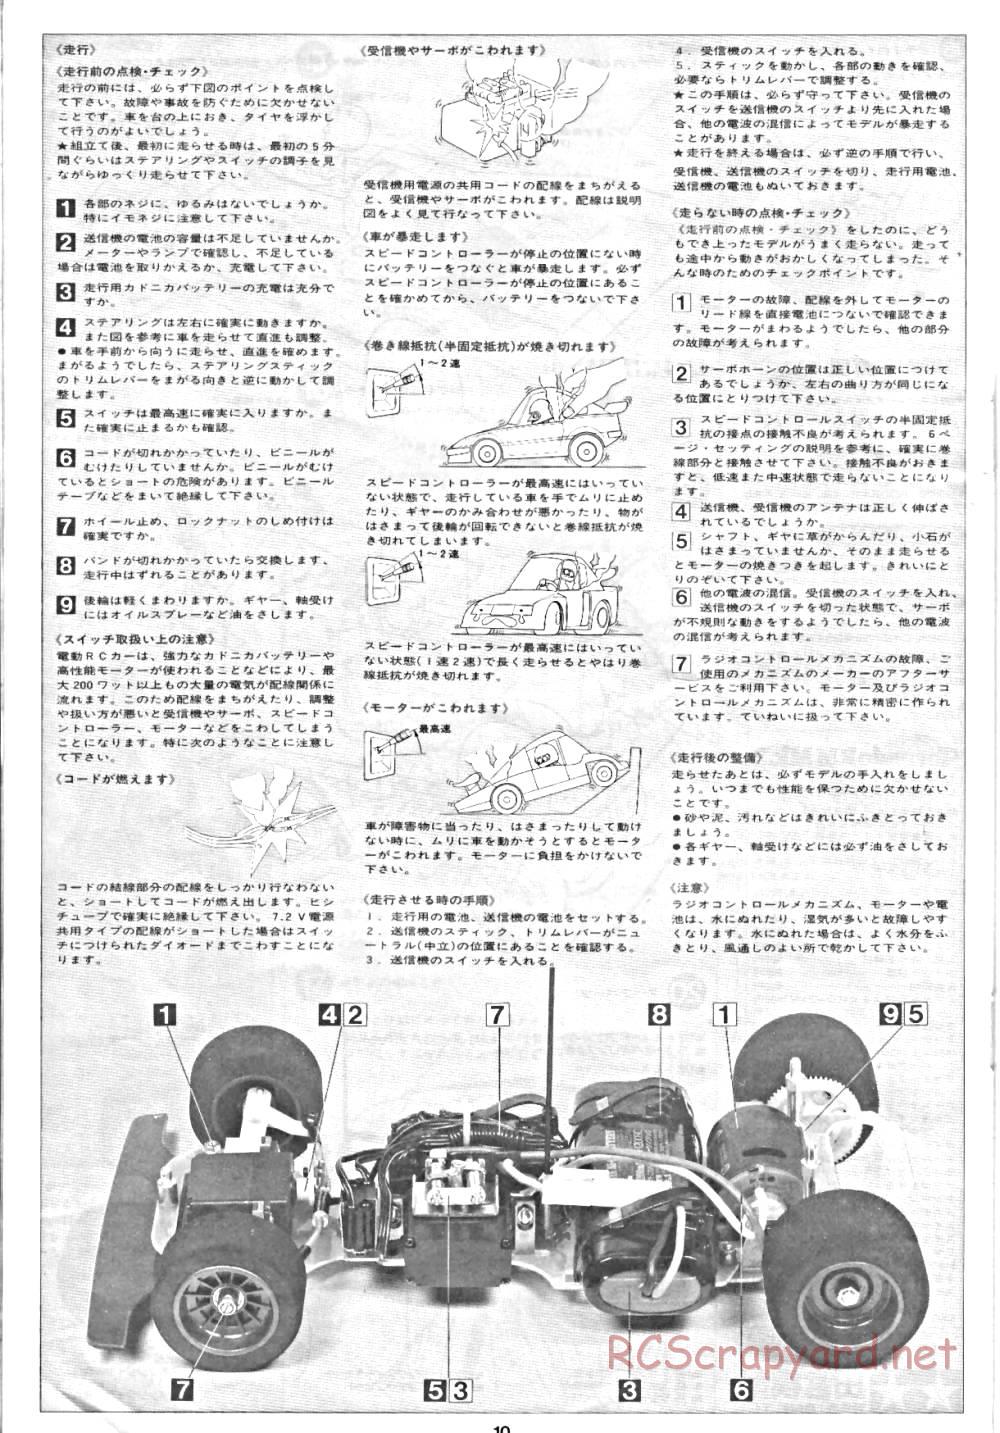 Tamiya - Tornado - RM MK.3 - 58032 - Manual - Page 10